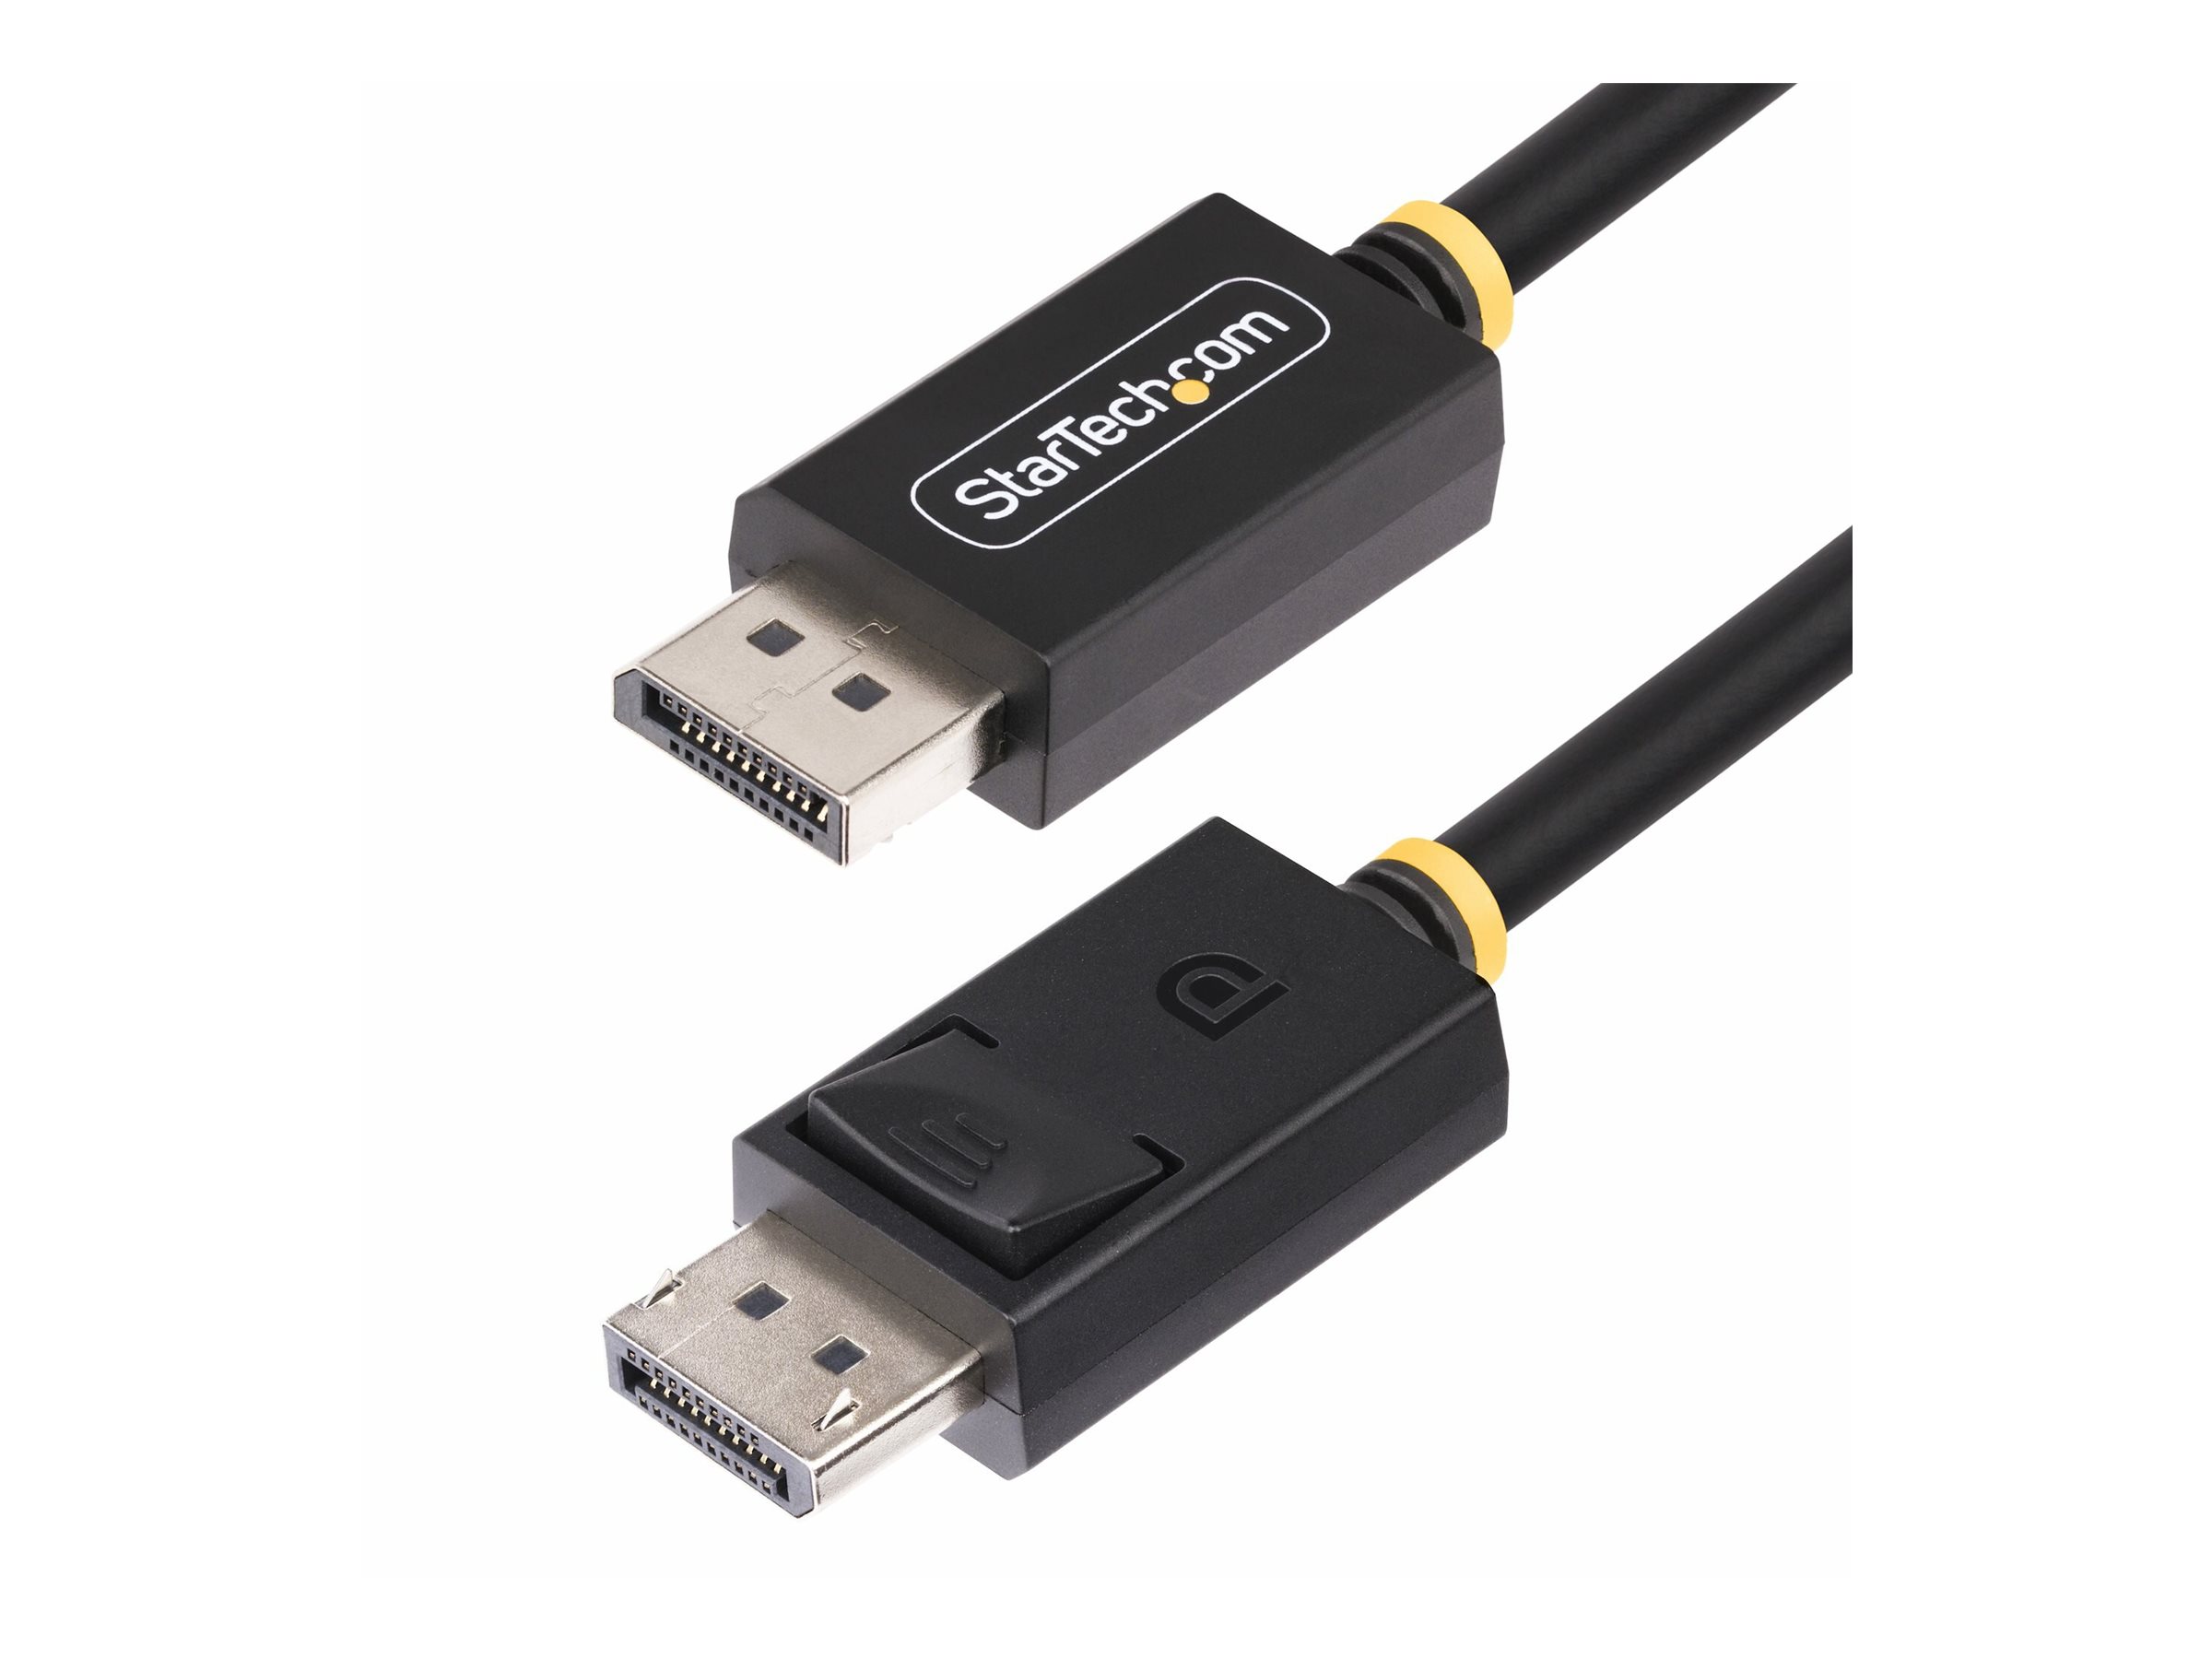 StarTech.com 2m DisplayPort 2.1 Cable, VESA-Certified, DP40 DP 2.1 Cable - Câble DisplayPort - DisplayPort (M) verrouillé pour DisplayPort (M) verrouillé - DisplayPort 2.1 - 2 m - passif, support pour 8K60Hz, support pour 4K144Hz, support 1440 p 240 Hz, débit de transfert de données jusqu'à 40 Gbps, UHBR10, prise en charge HDR - noir - DP21-2M-DP40-CABLE - Câbles vidéo